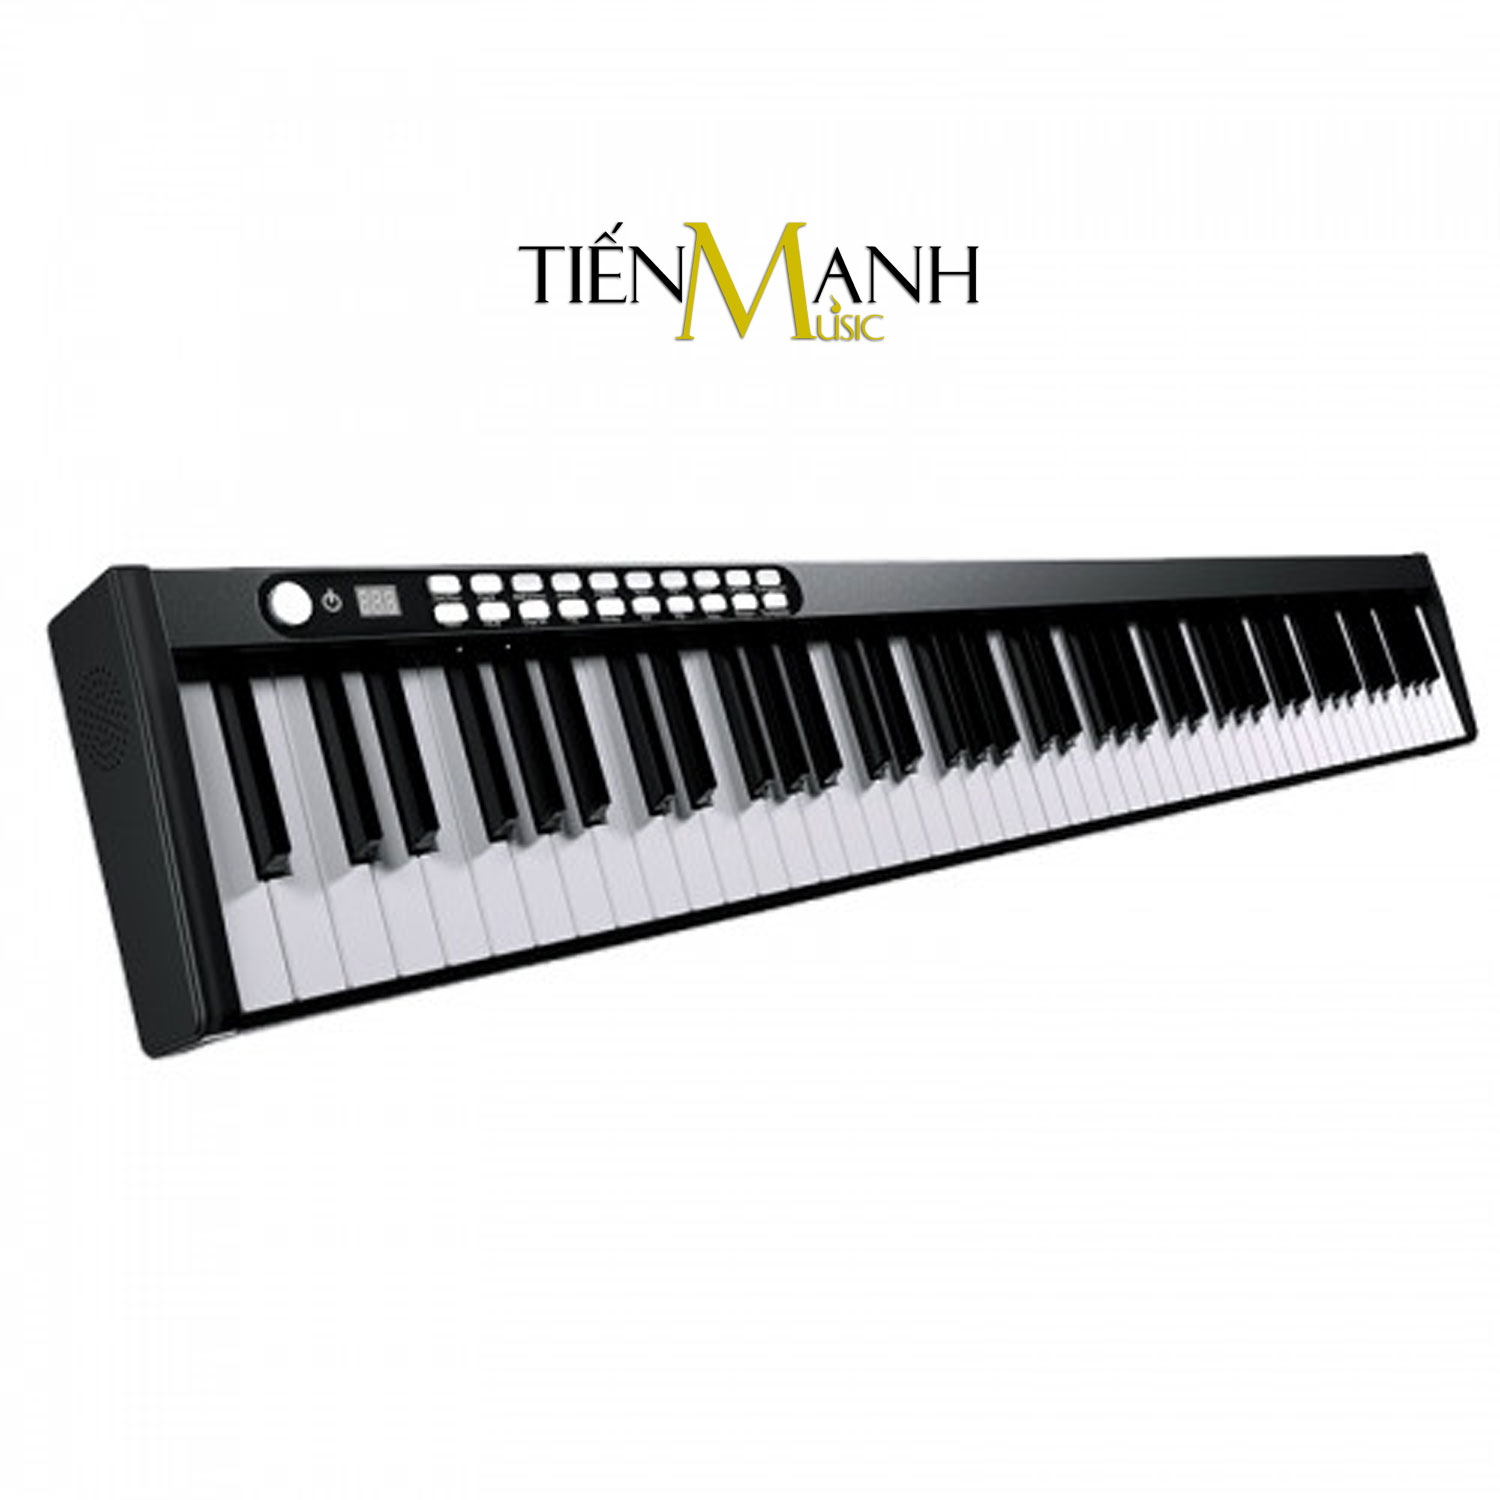 Bộ Đàn Piano Điện Bora BX1A- 88 Phím nặng Cảm ứng lực BX-1A Midi Keyboard Controllers BX1 - Kèm Chân Gỗ, Móng Gẩy DreamMaker